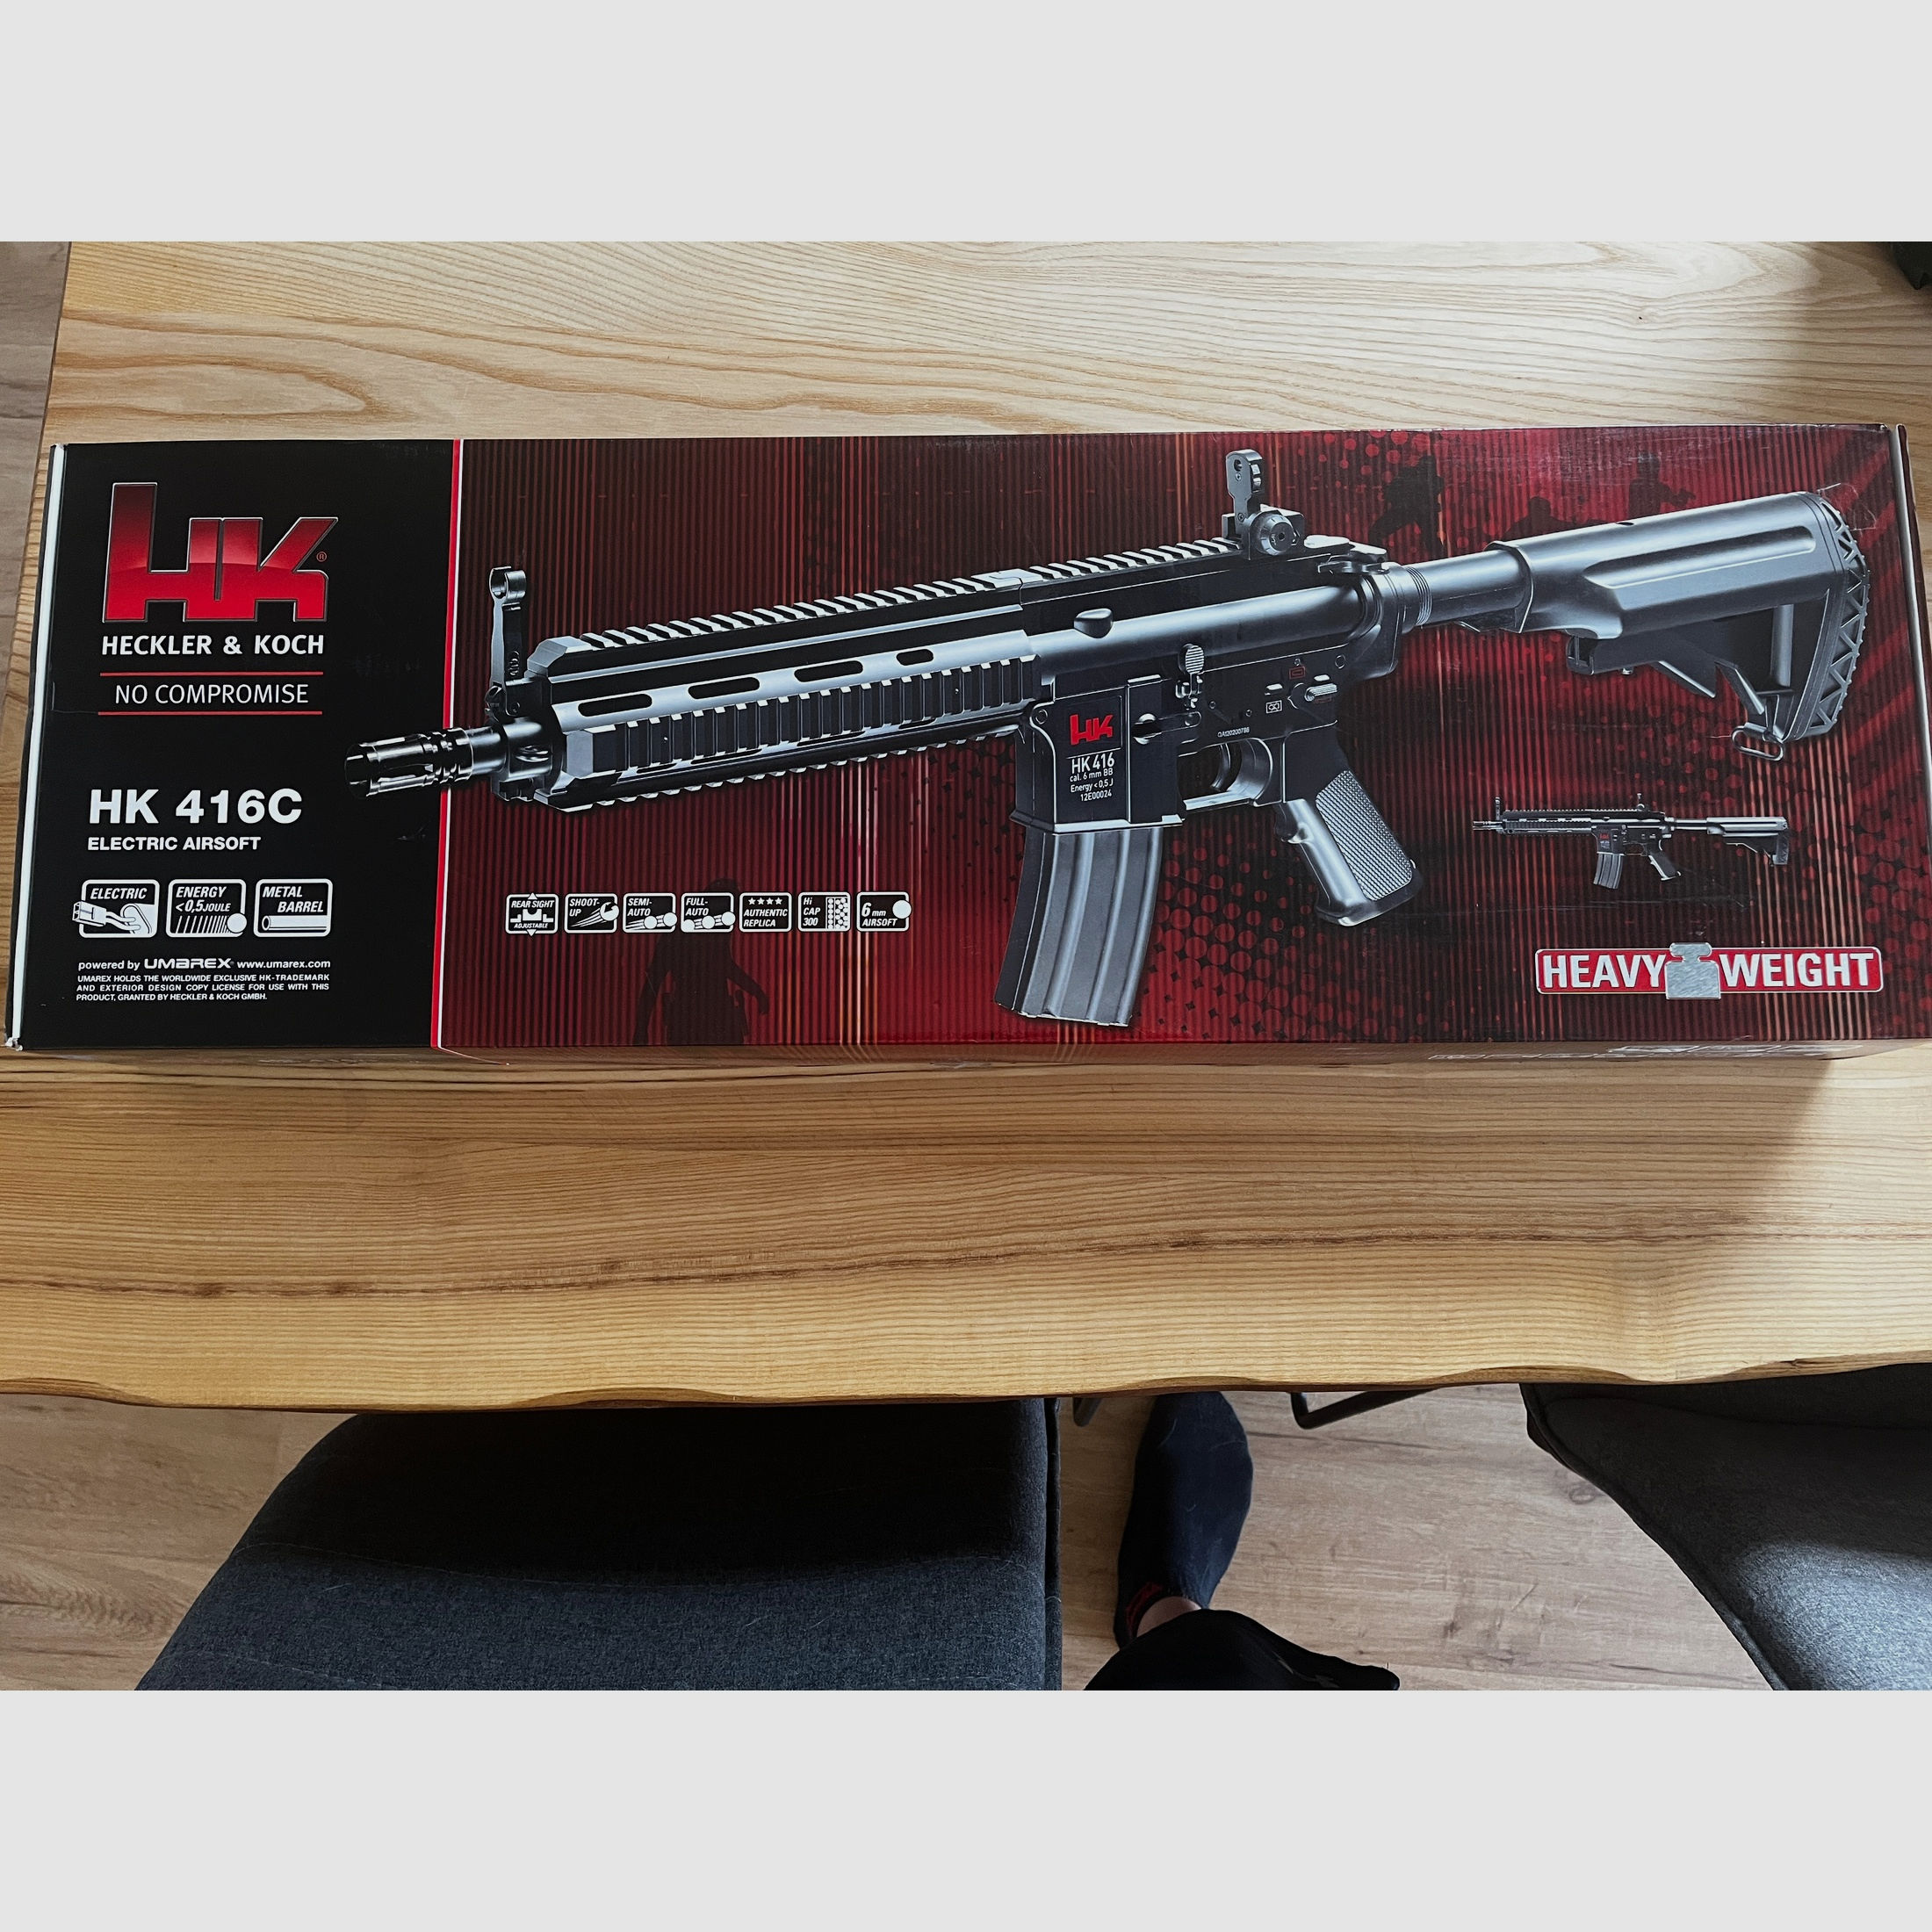 H&K 416c und Beretta Pistole 0,5j 